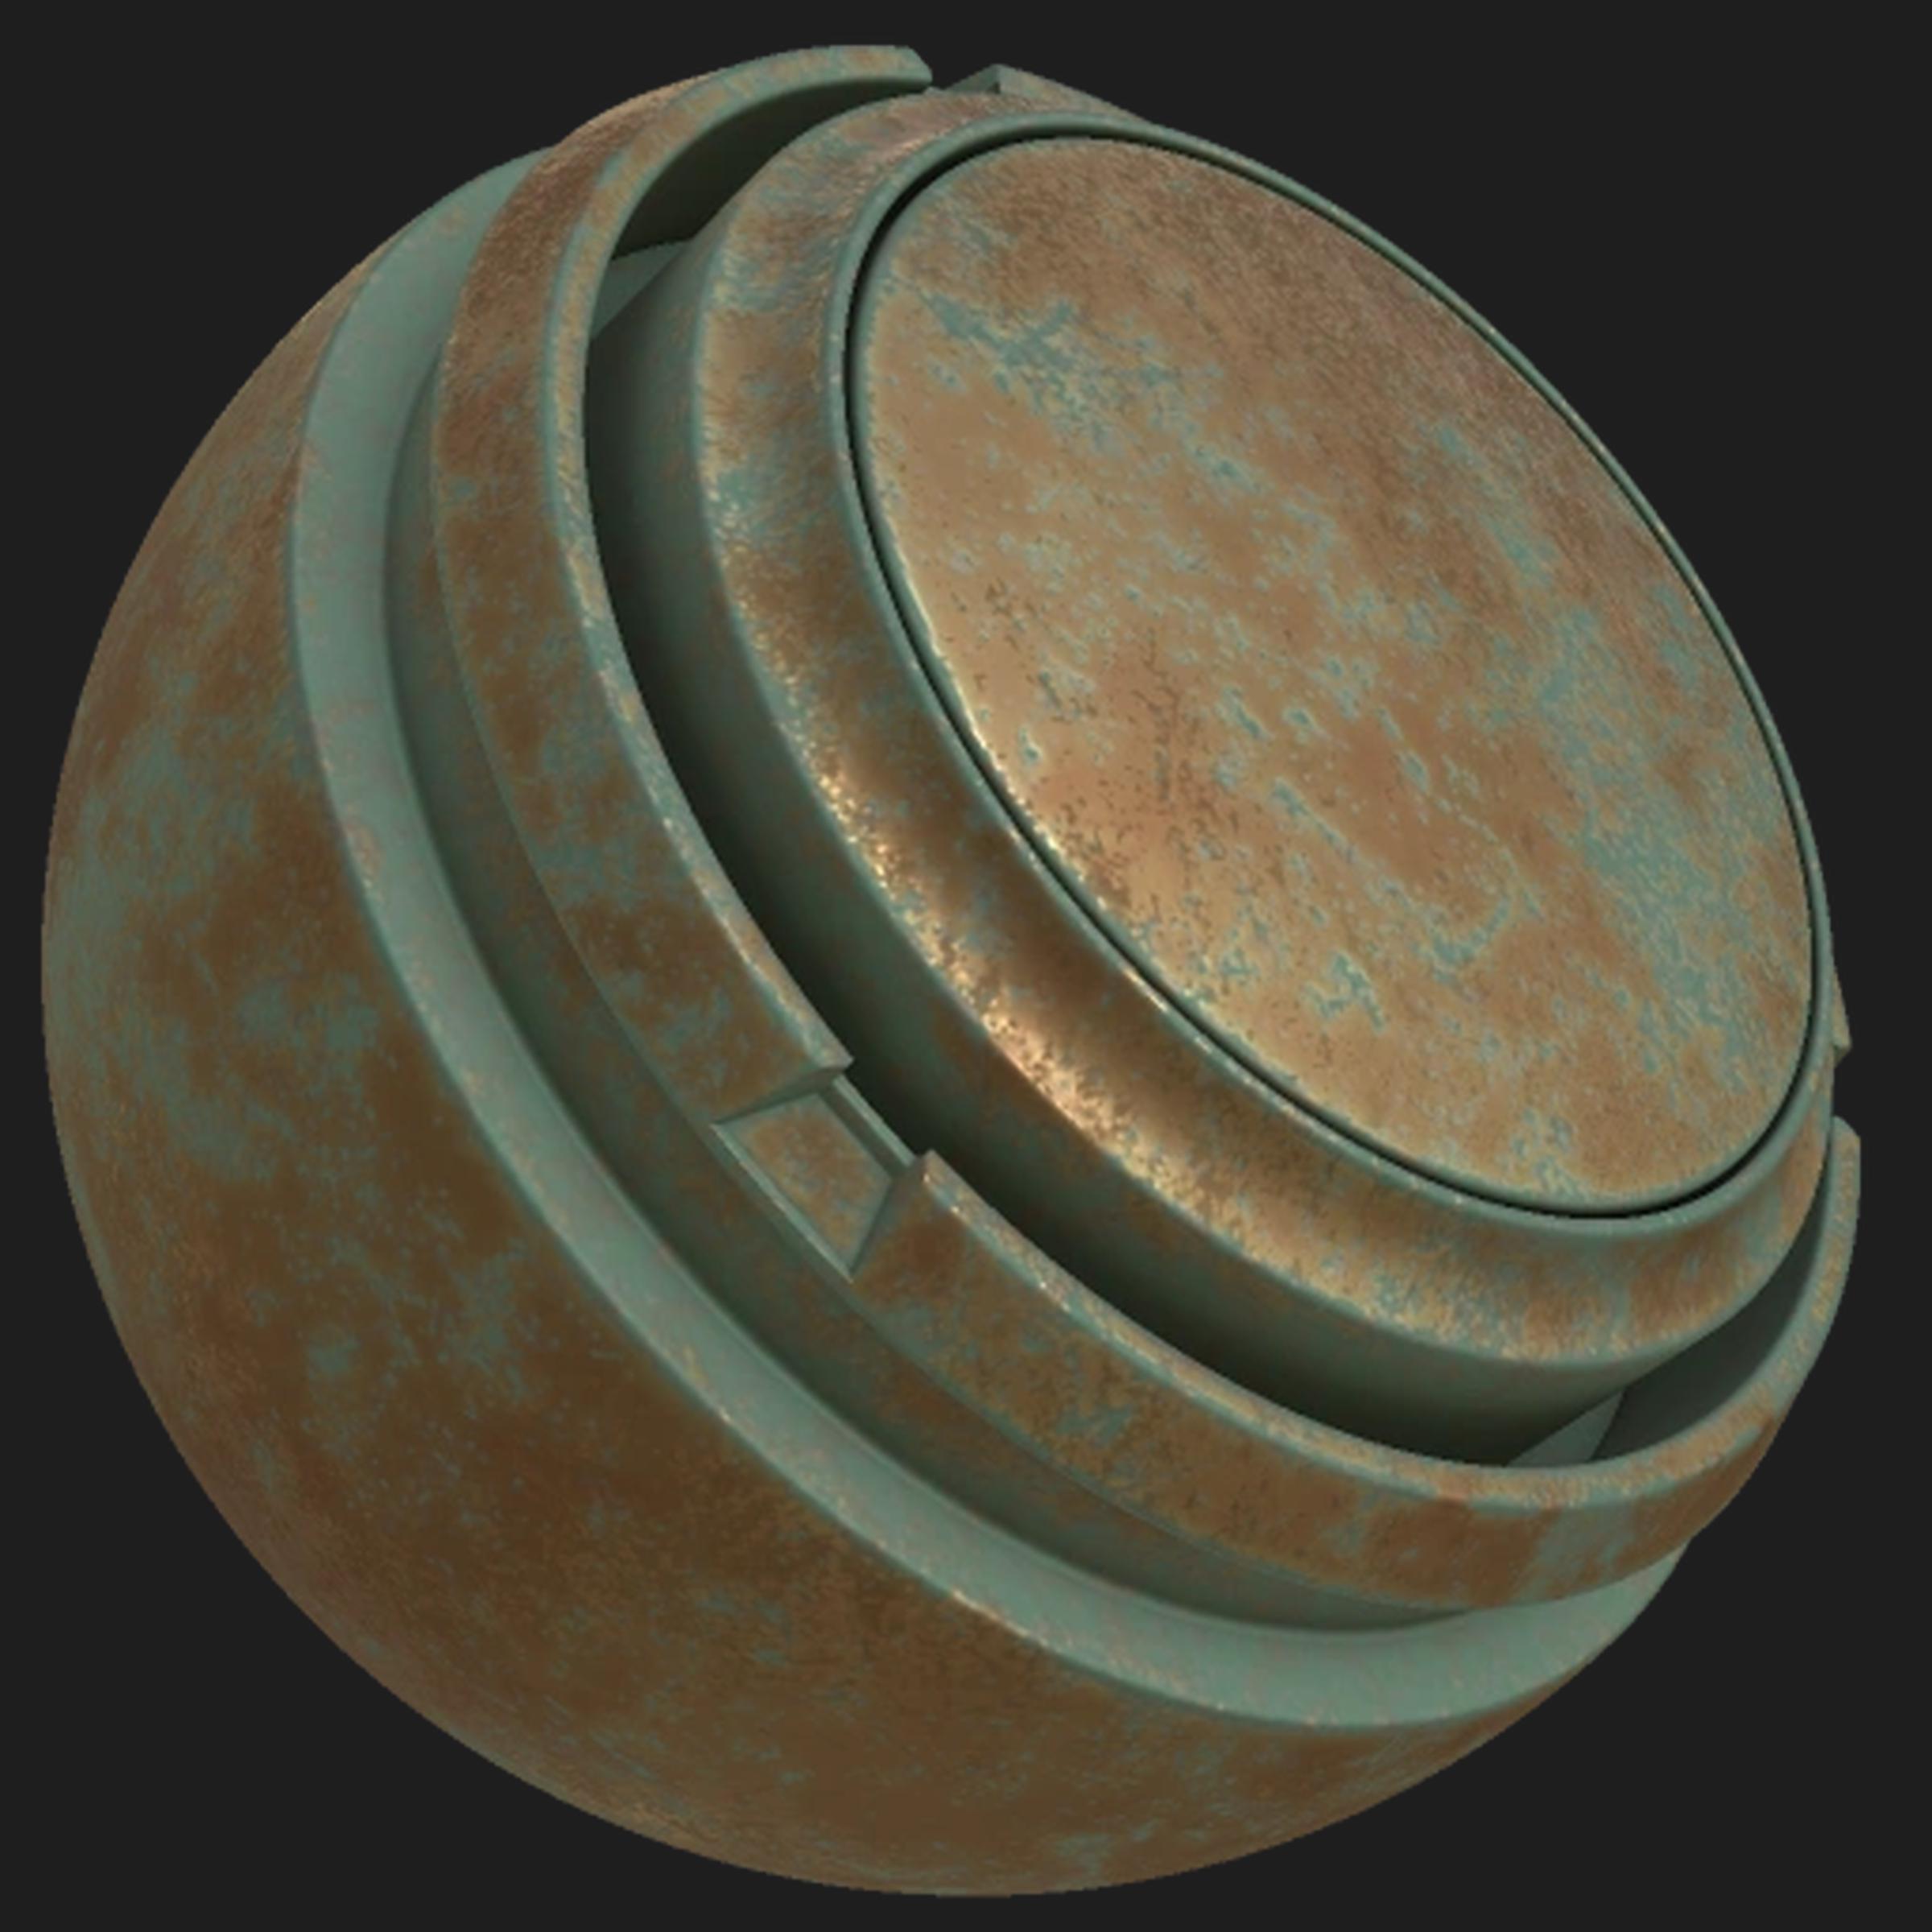 Oxidized Bronze Substance 3D Community Assets